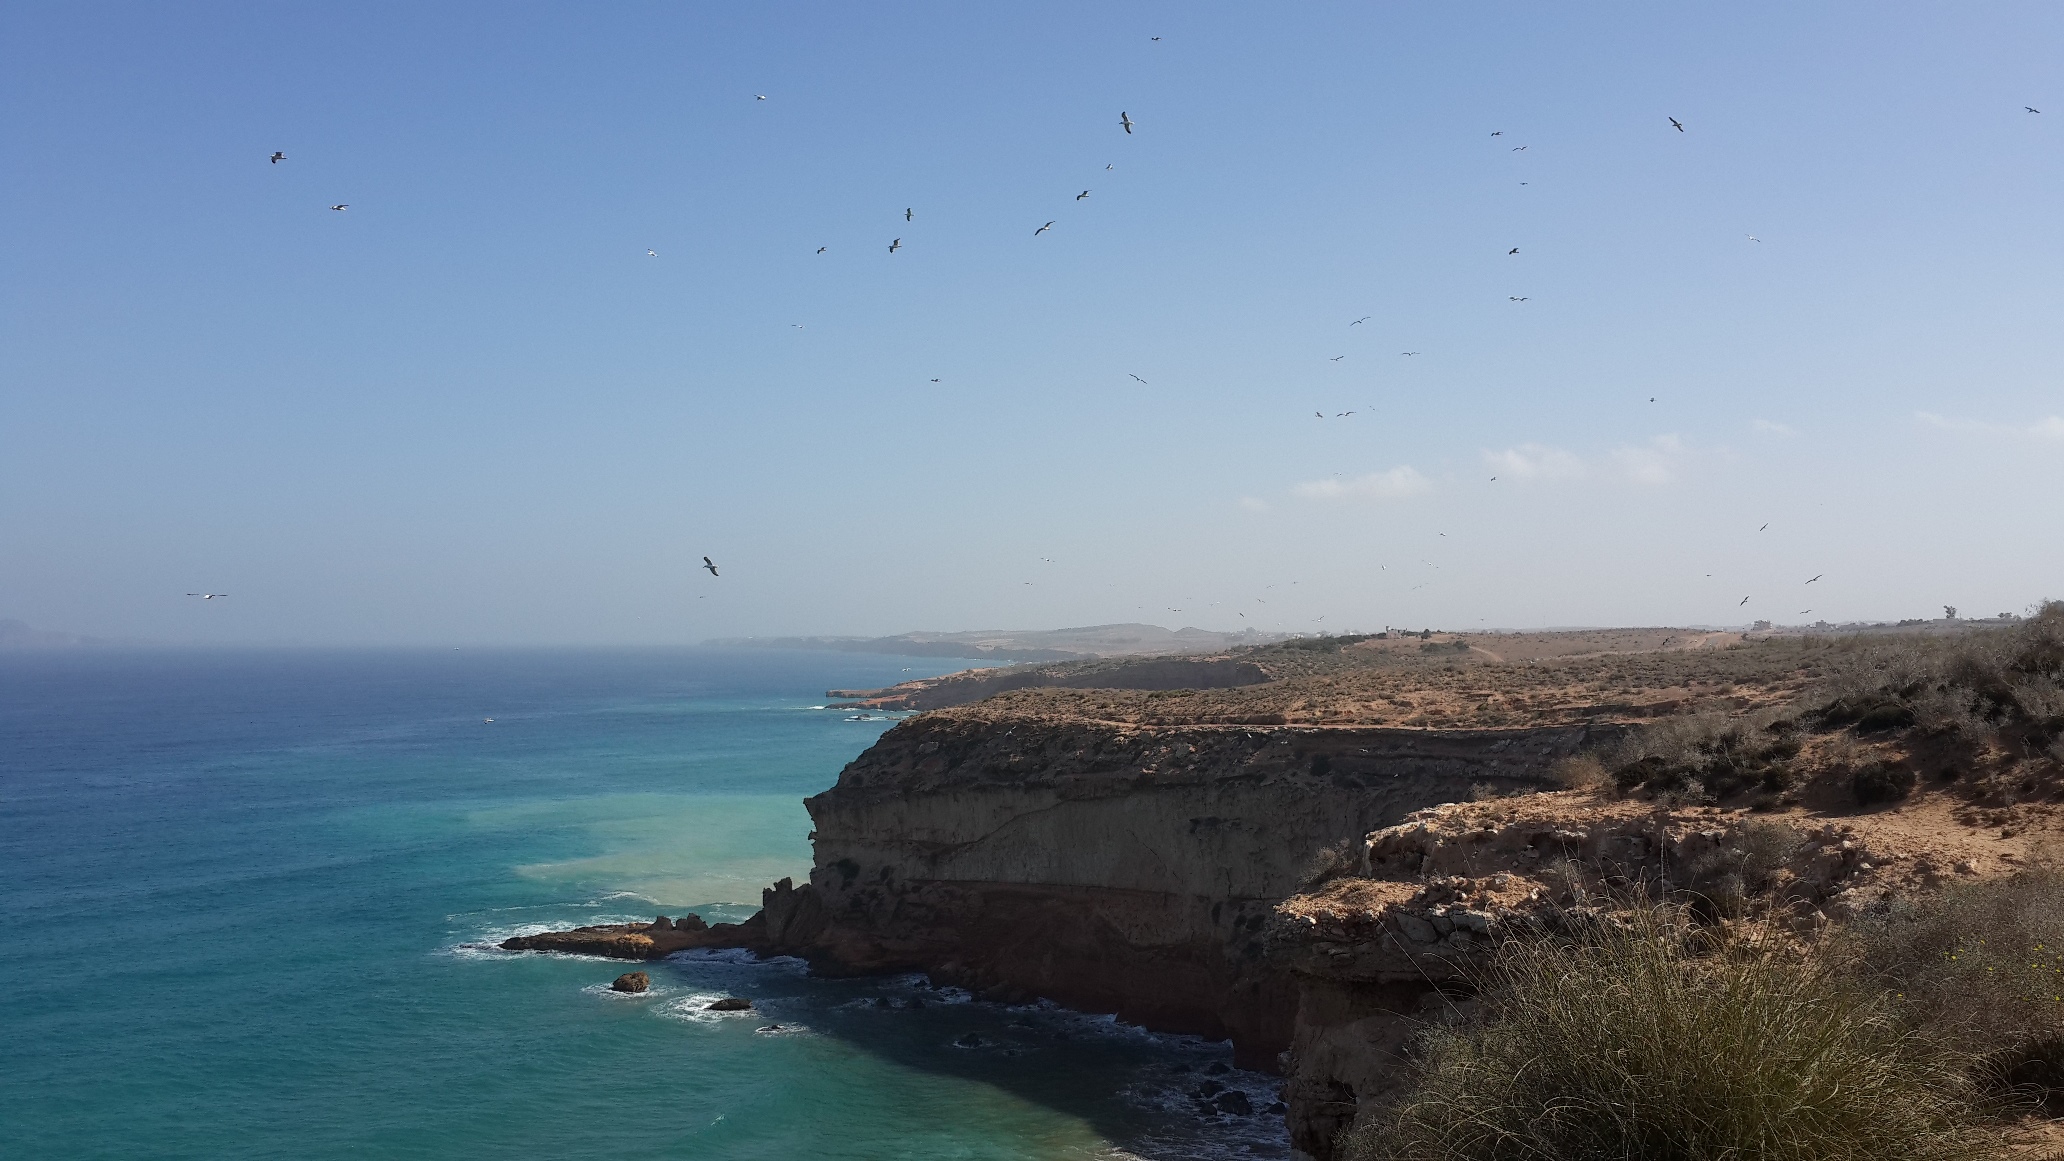 Tmadet - Sidi El Bachir